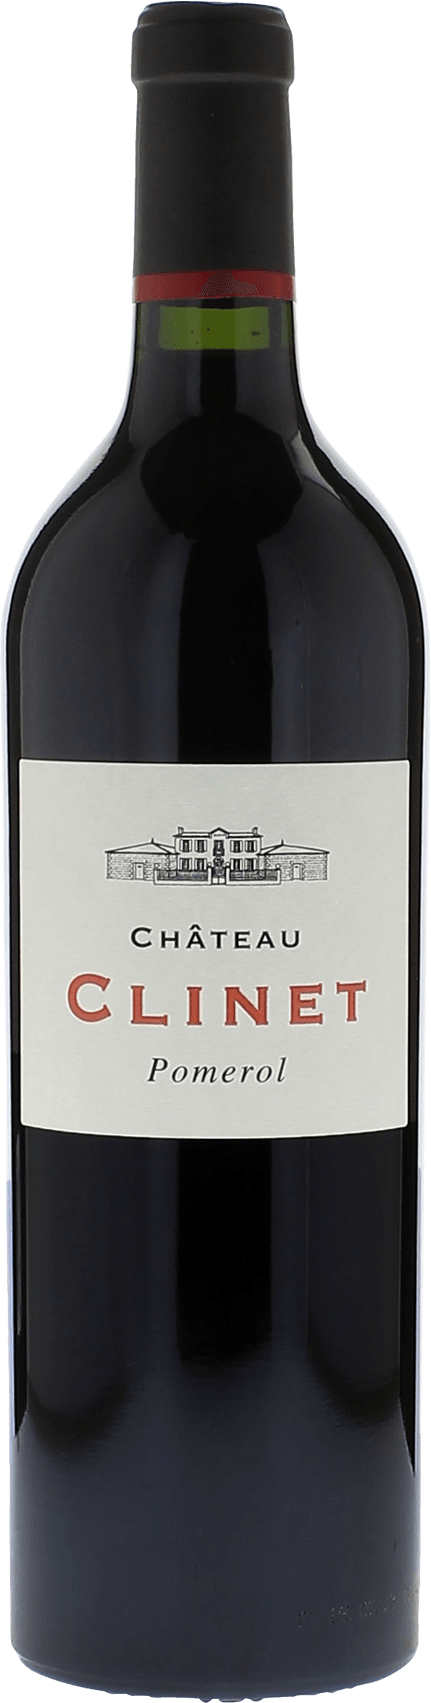 Clinet 2013  Pomerol, Bordeaux rouge